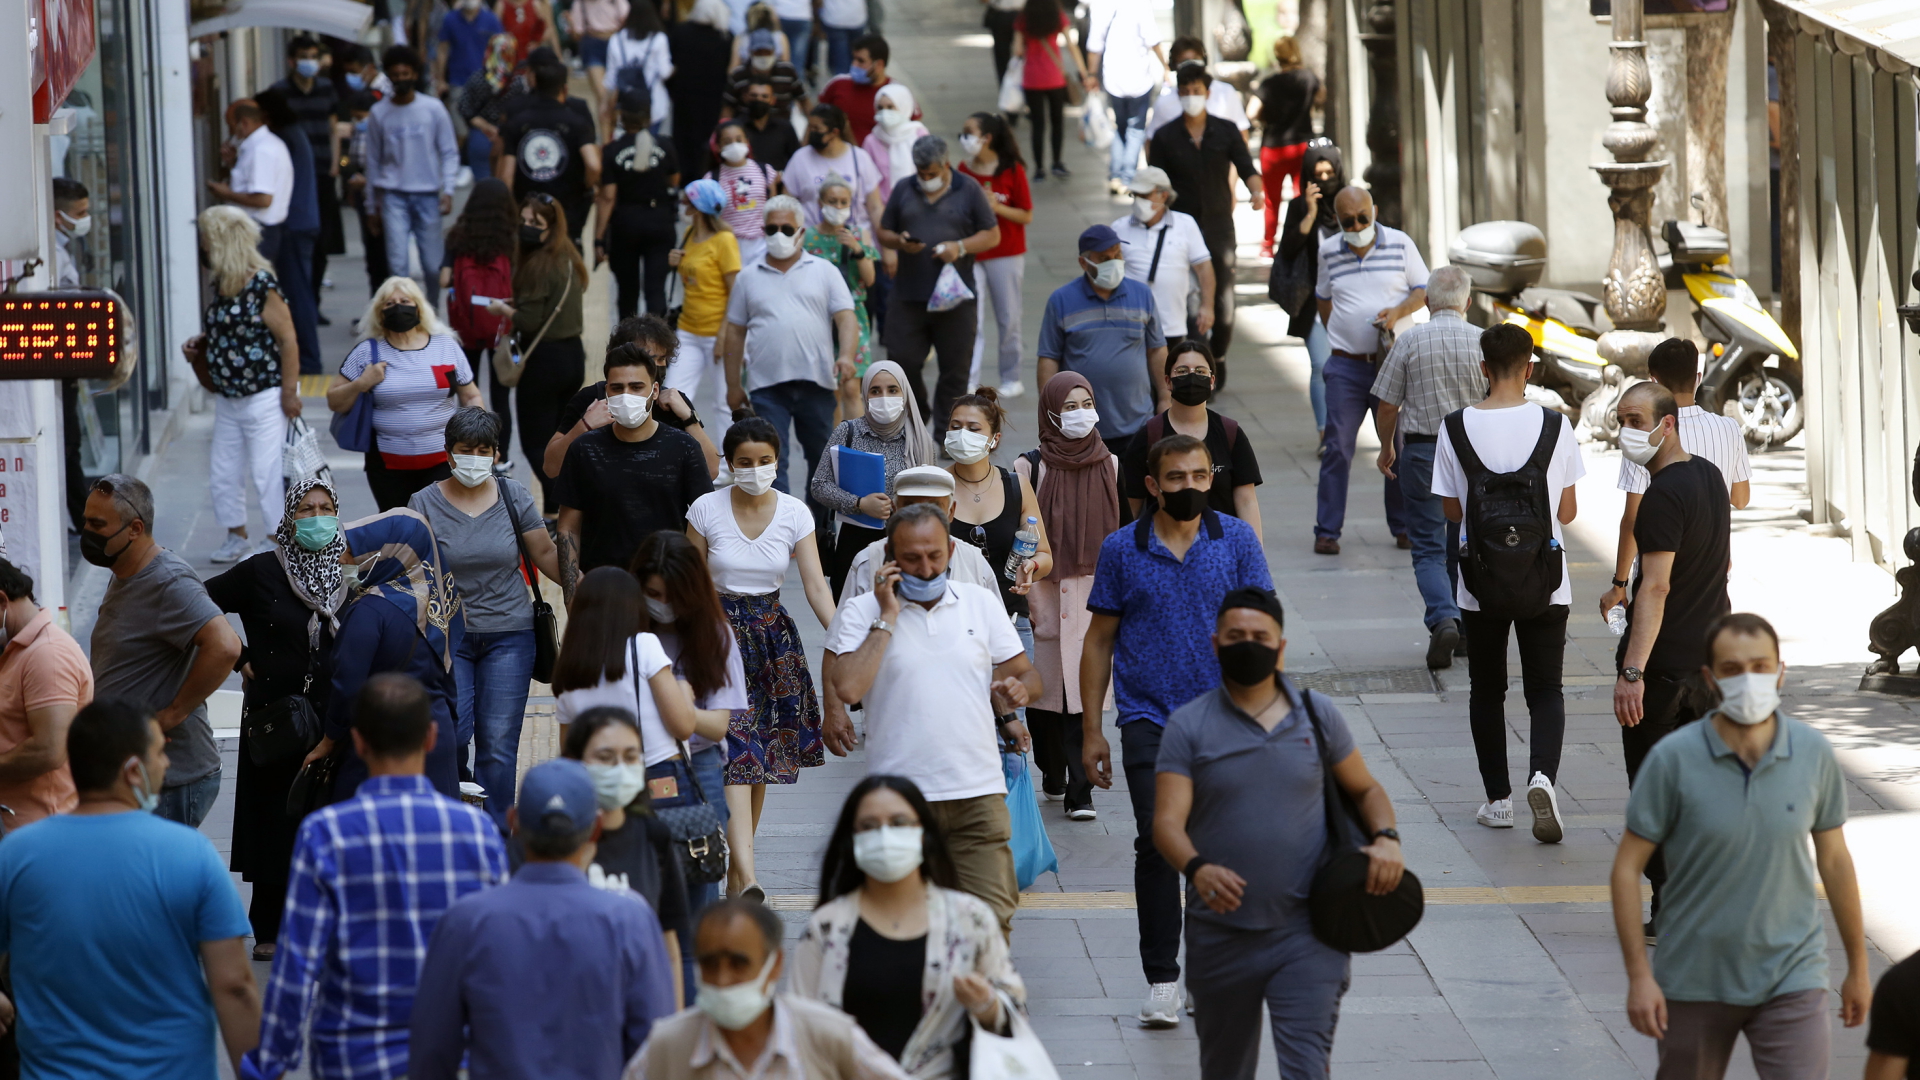  Fußgänger gehen auf einer Straße in Ankara, in der Türkei | dpa